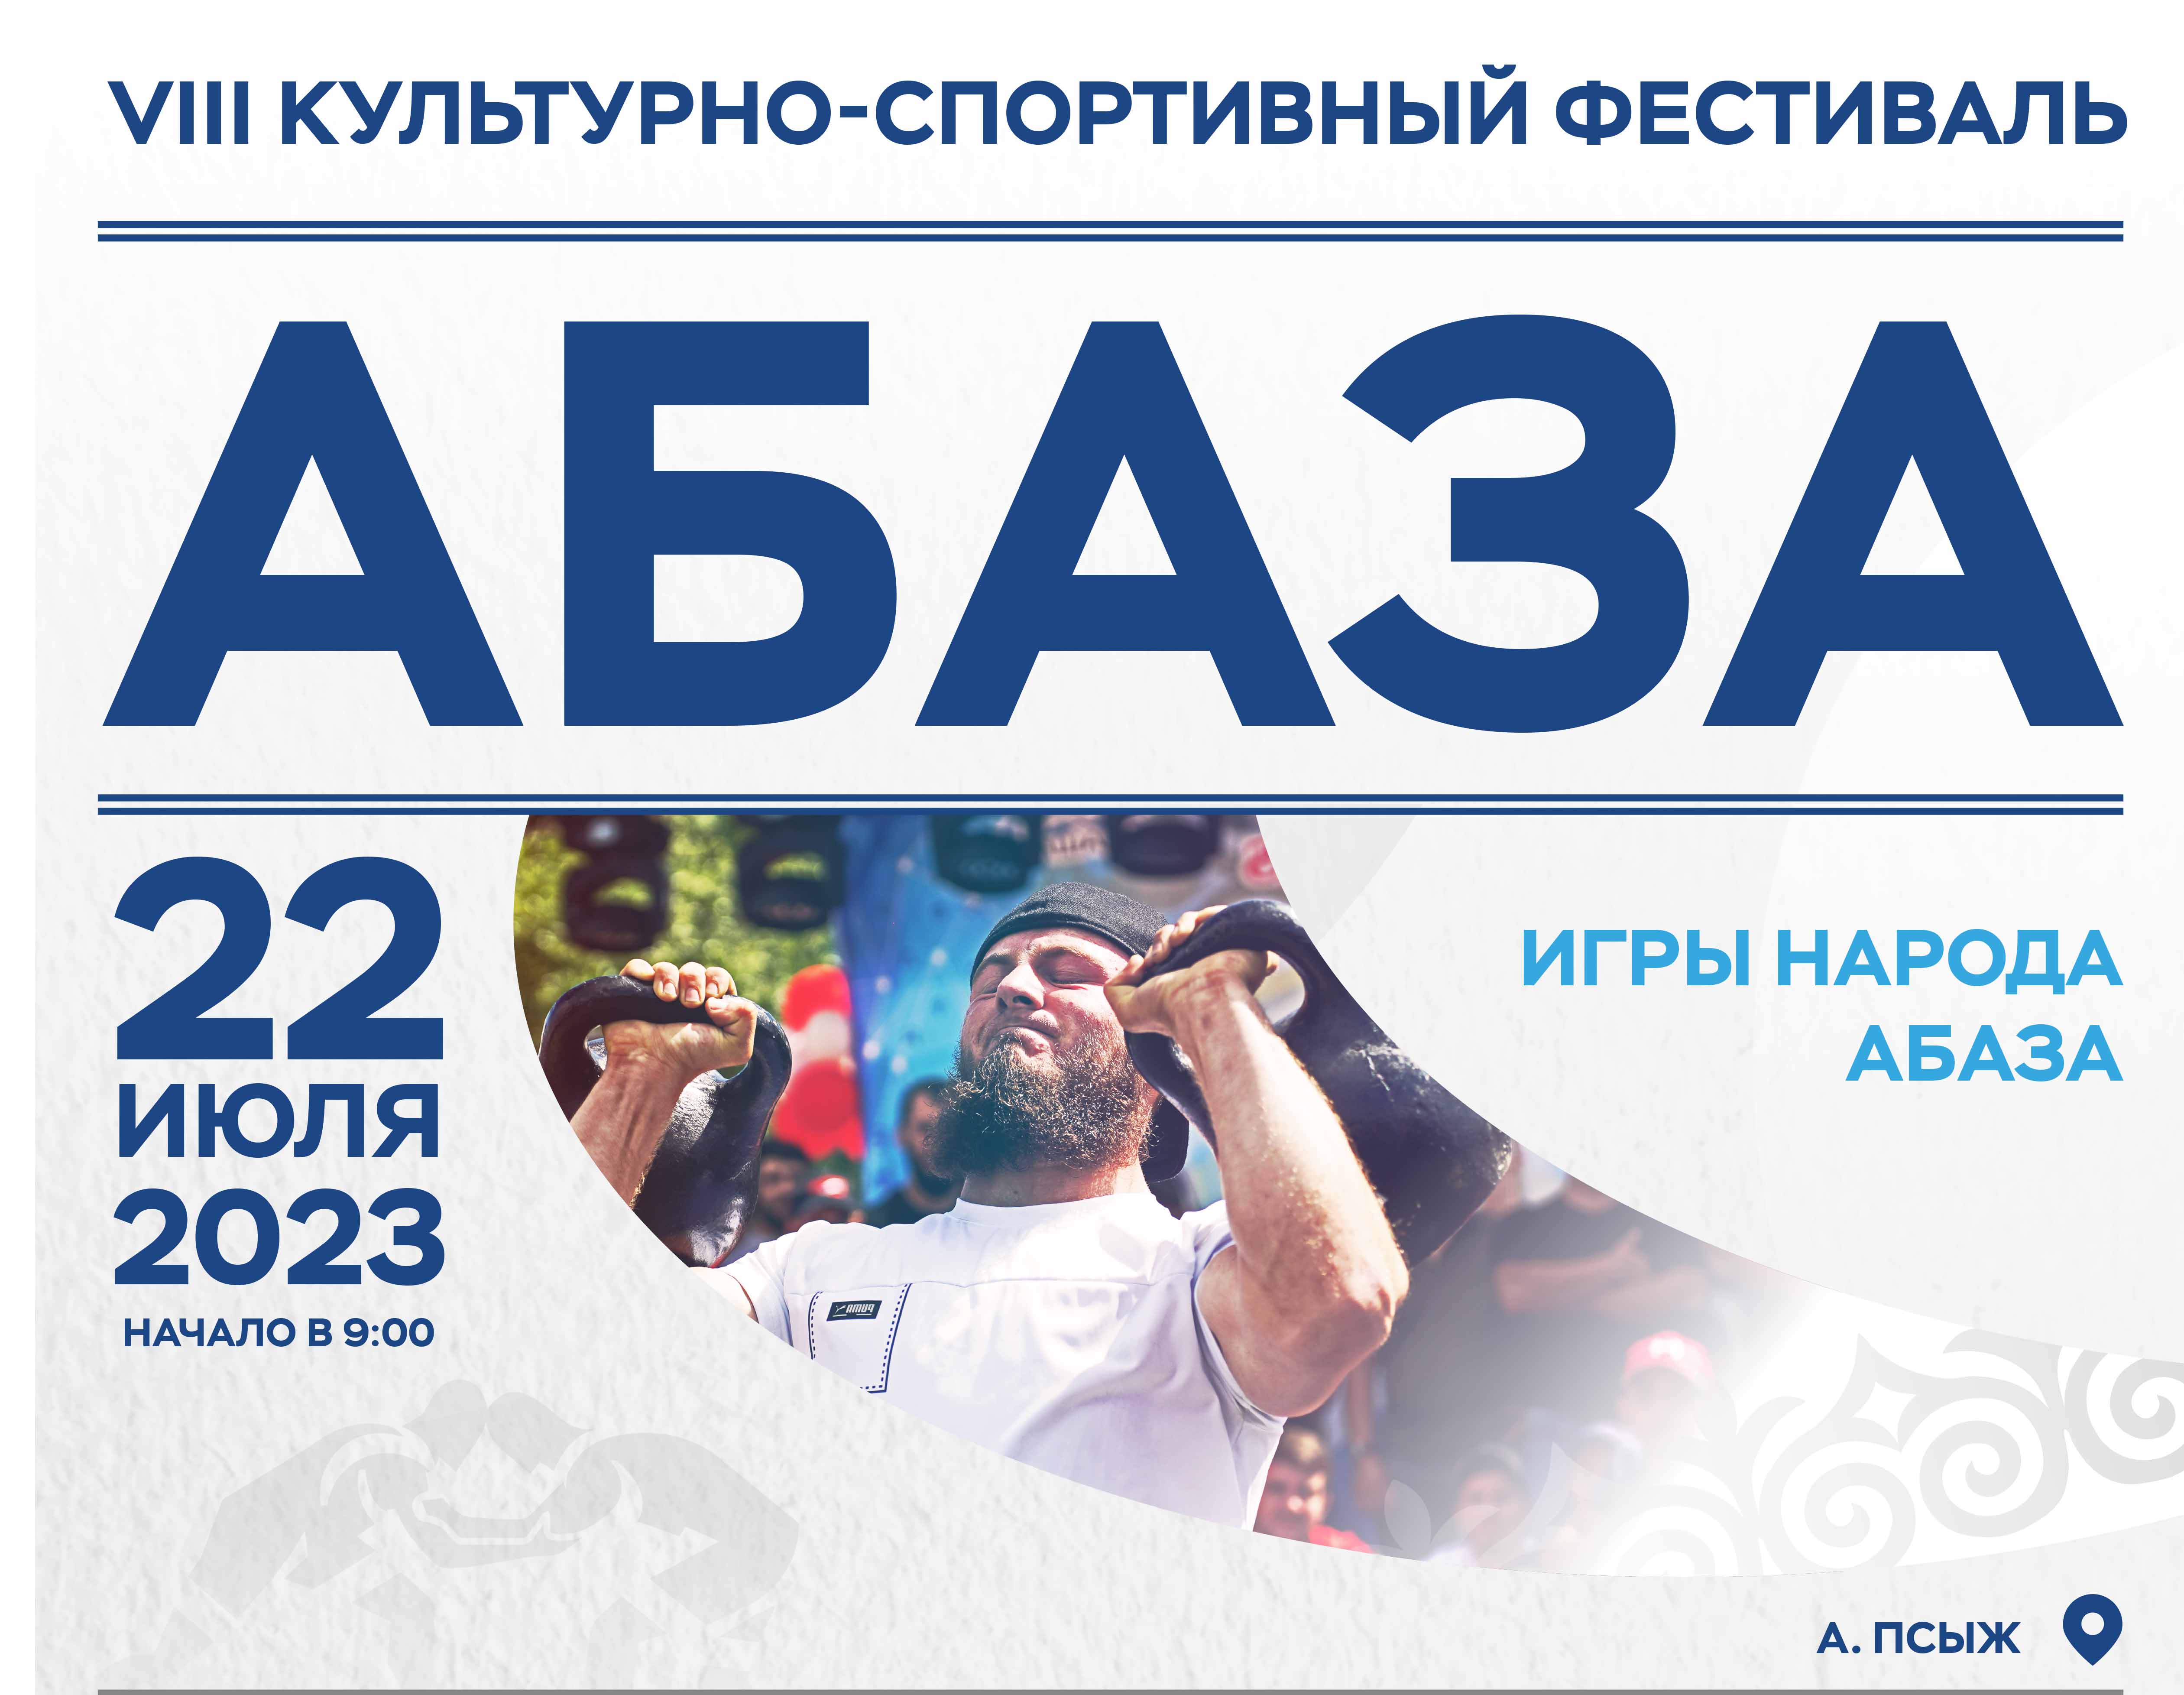 22 июля в Карачаево-Черкесии пройдут традиционные Игры народа Абаза